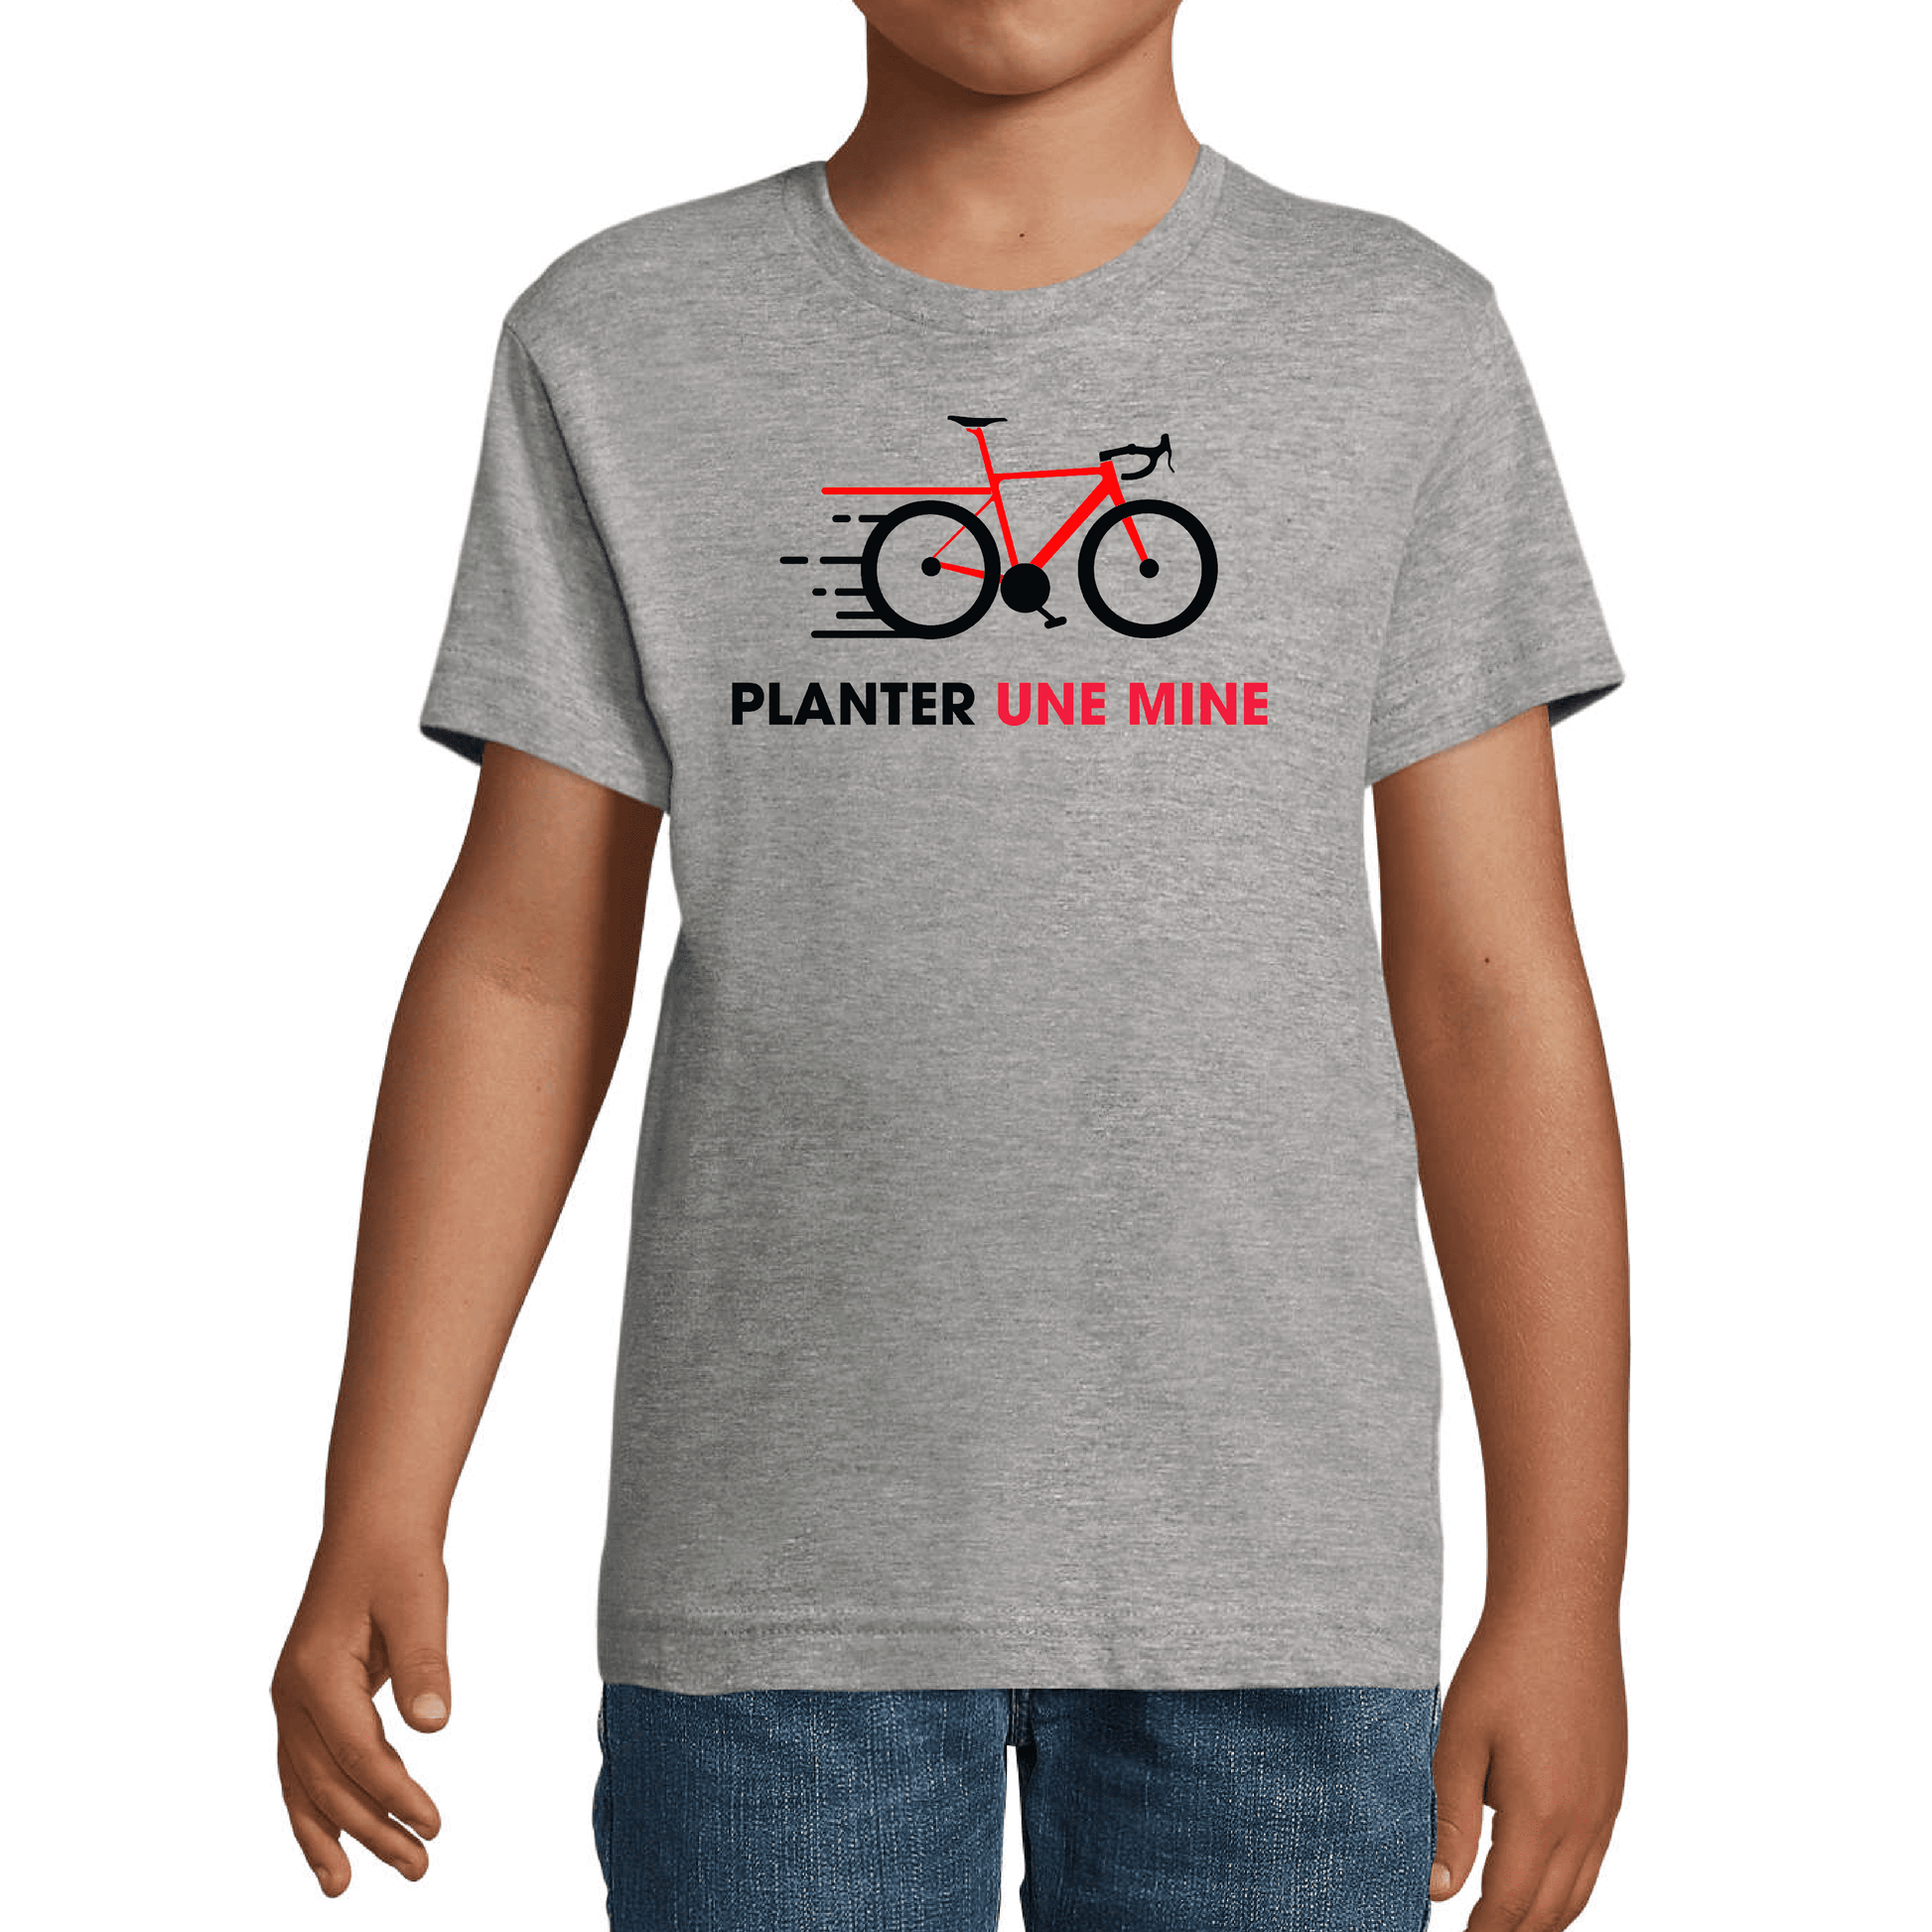 T-shirt "Planter une mine" Junior - Team-Cofidis